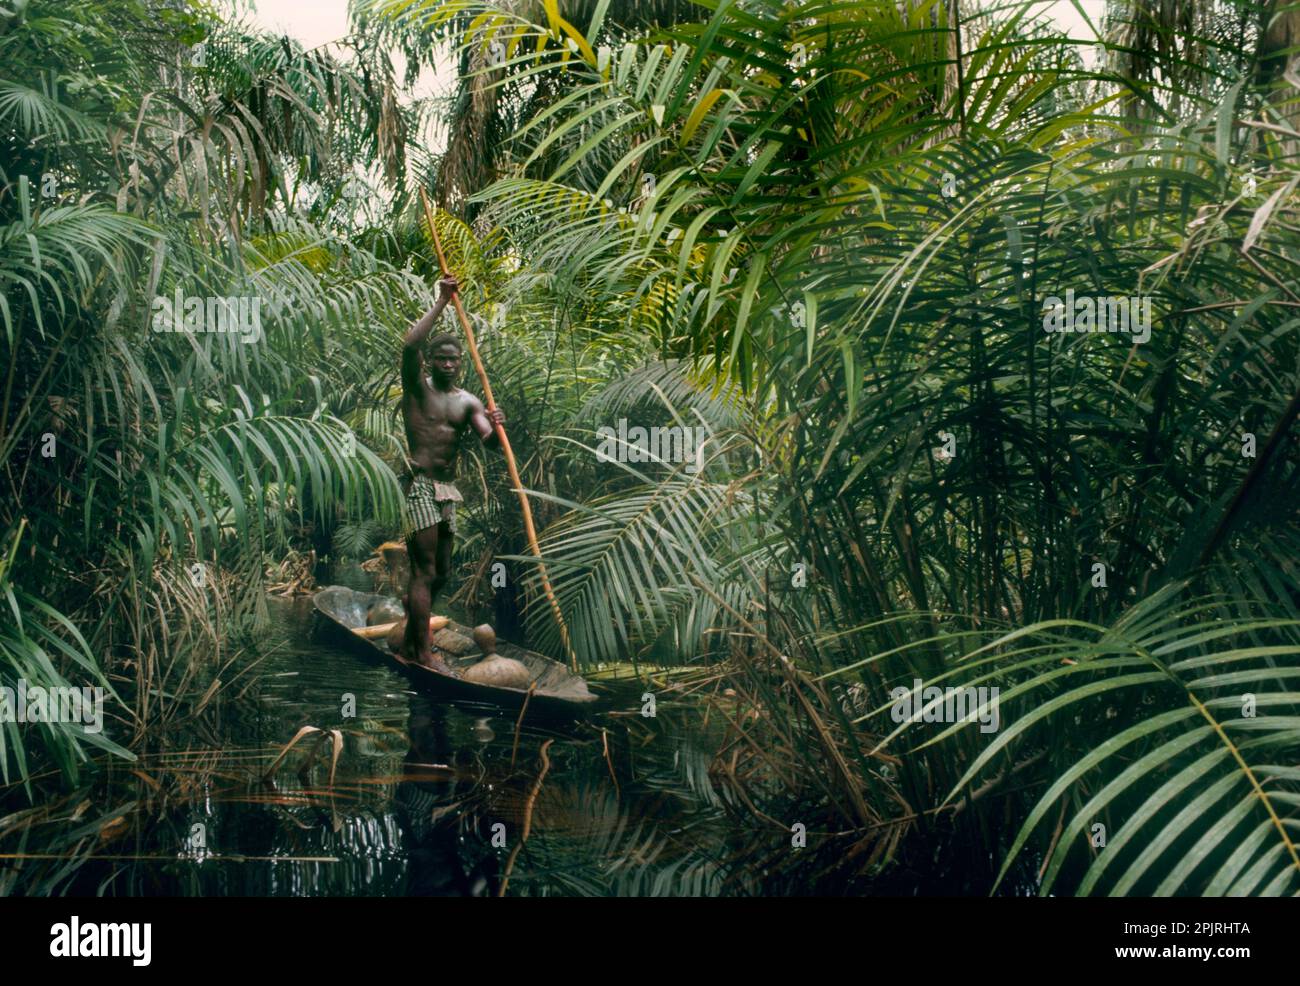 Afrika, Libinza-ethnische Gruppe, Ngiri-Inseln, Demokratische Republik Kongo. Mann, der Kanu mit Stange im raphia Palmensumpfwald treibt. Stockfoto